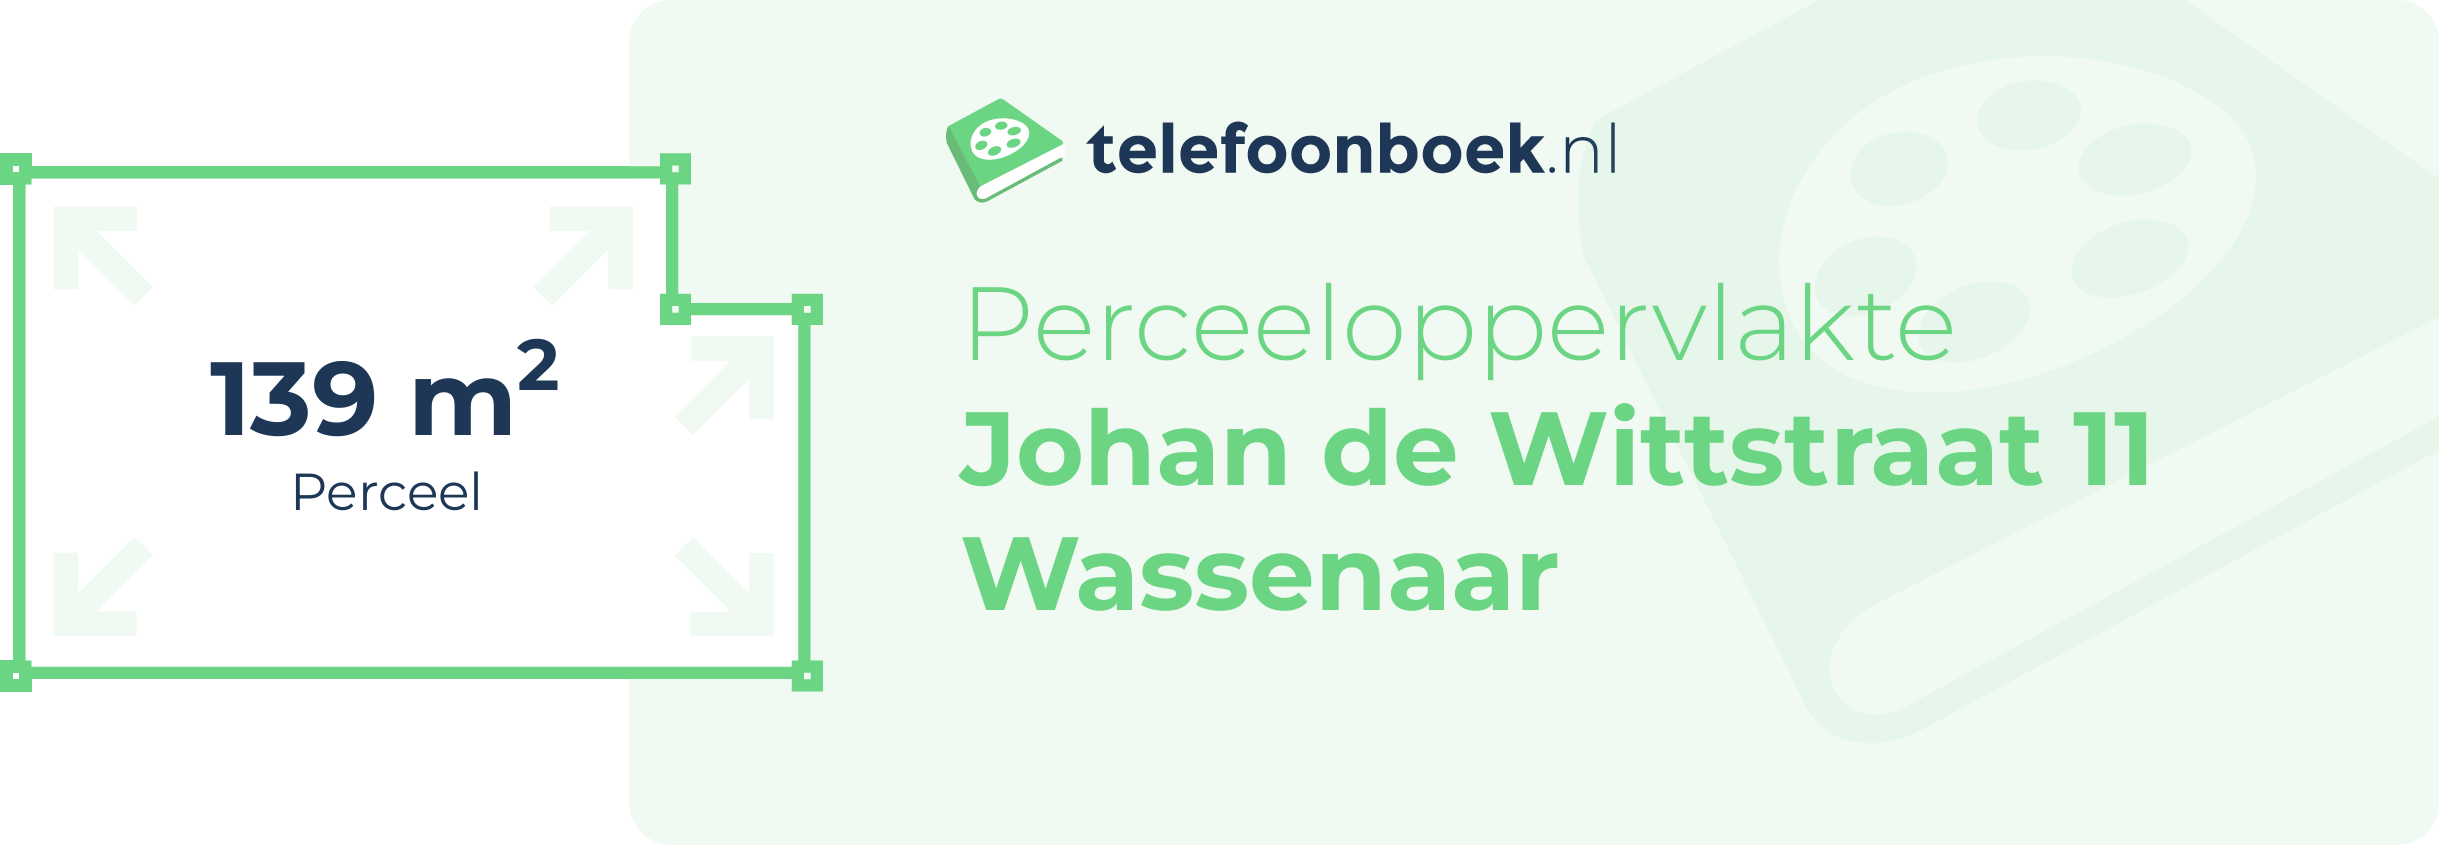 Perceeloppervlakte Johan De Wittstraat 11 Wassenaar